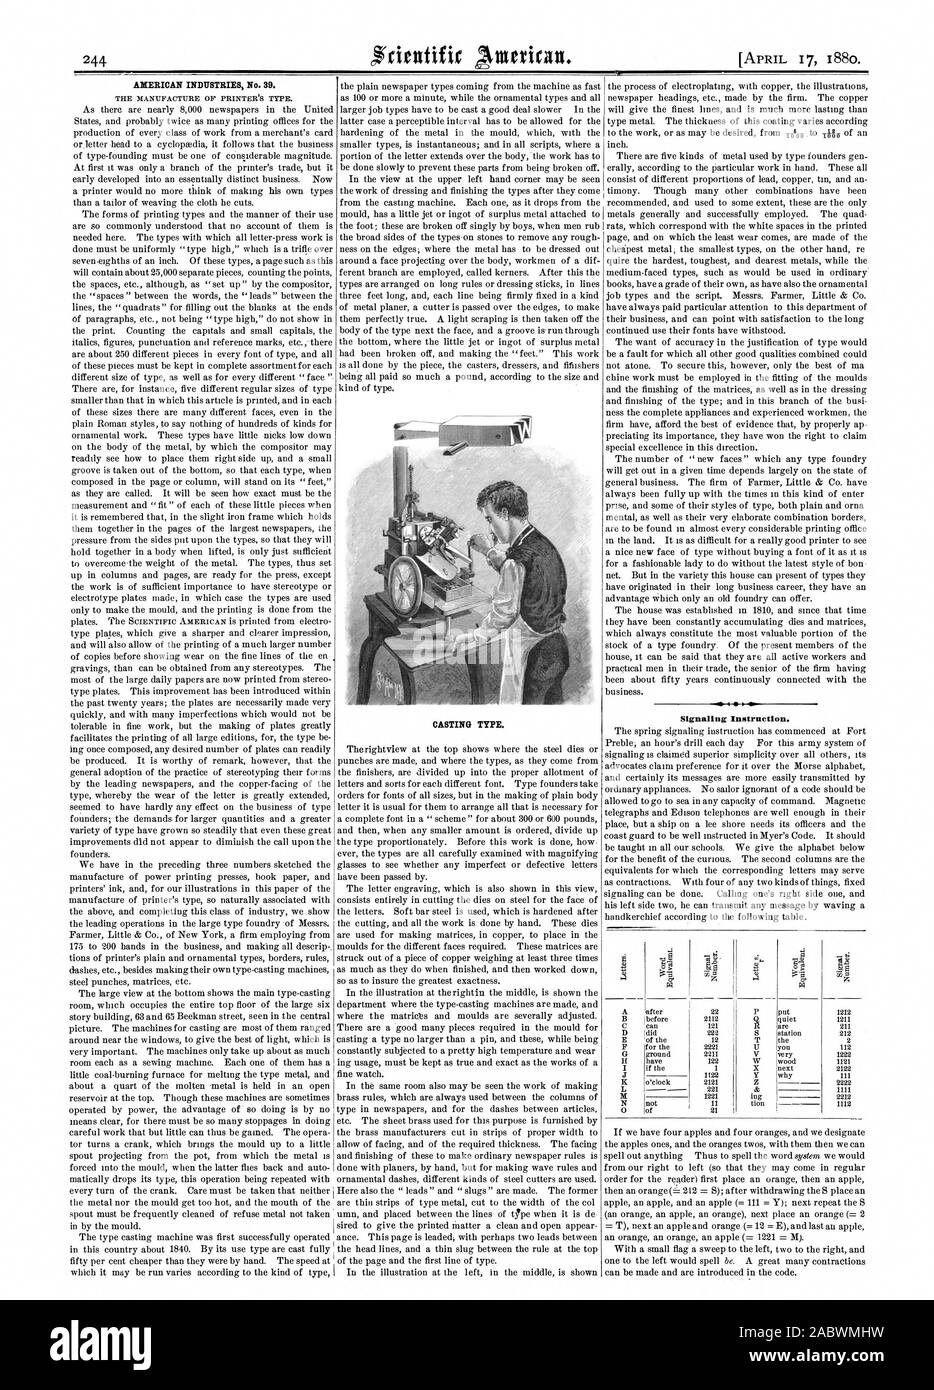 Las industrias estadounidenses nº 39. Tipo de casting. Instrucciones de señalización. Un tiOD 0, Scientific American, 1880-04-17 Foto de stock